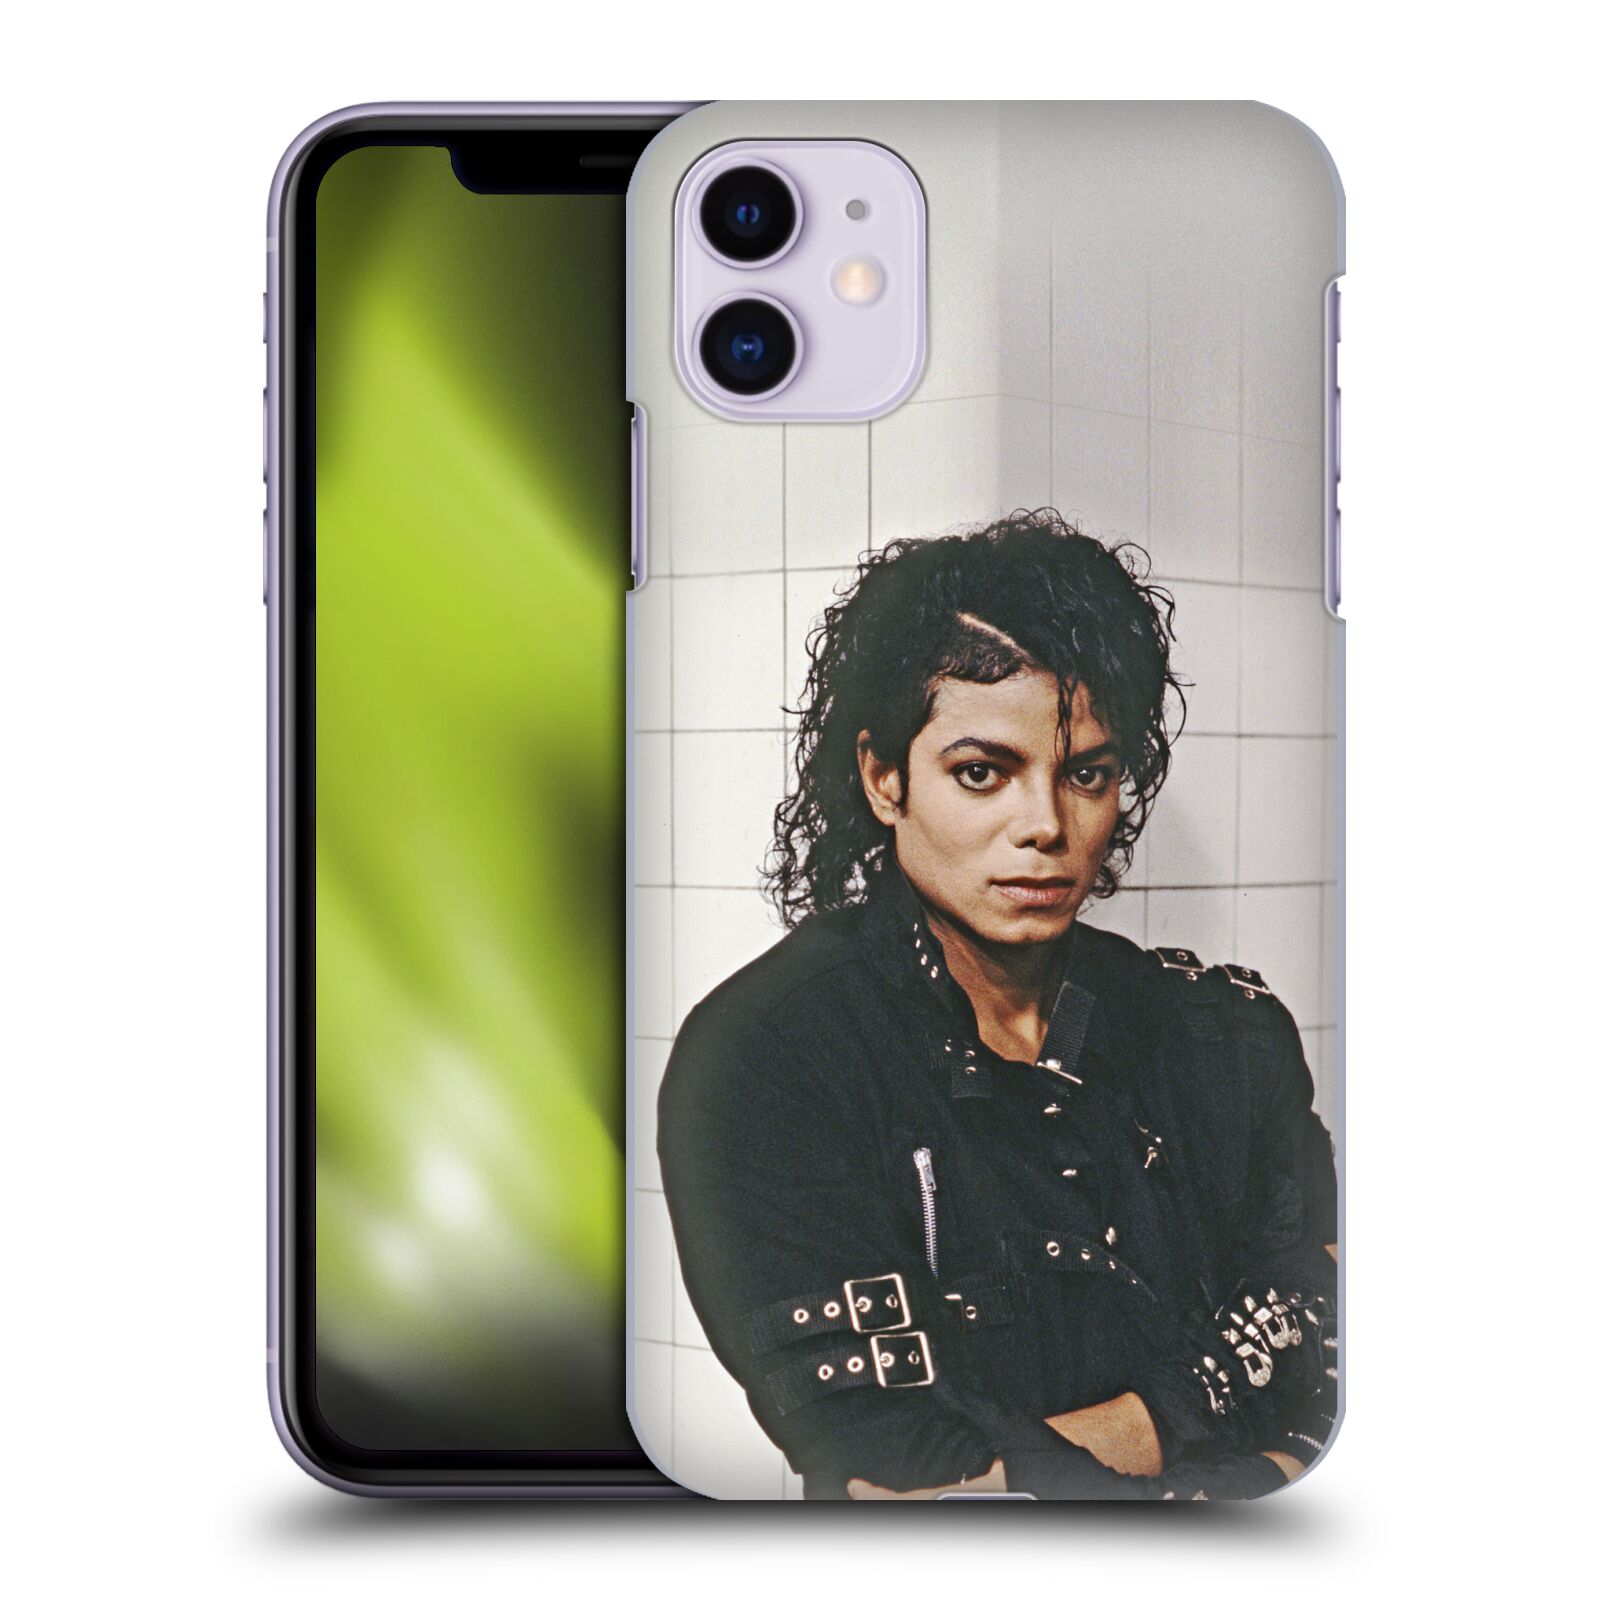 Zadní obal pro mobil Apple Iphone 11 - HEAD CASE - Zpěvák Michael Jackson - pohled